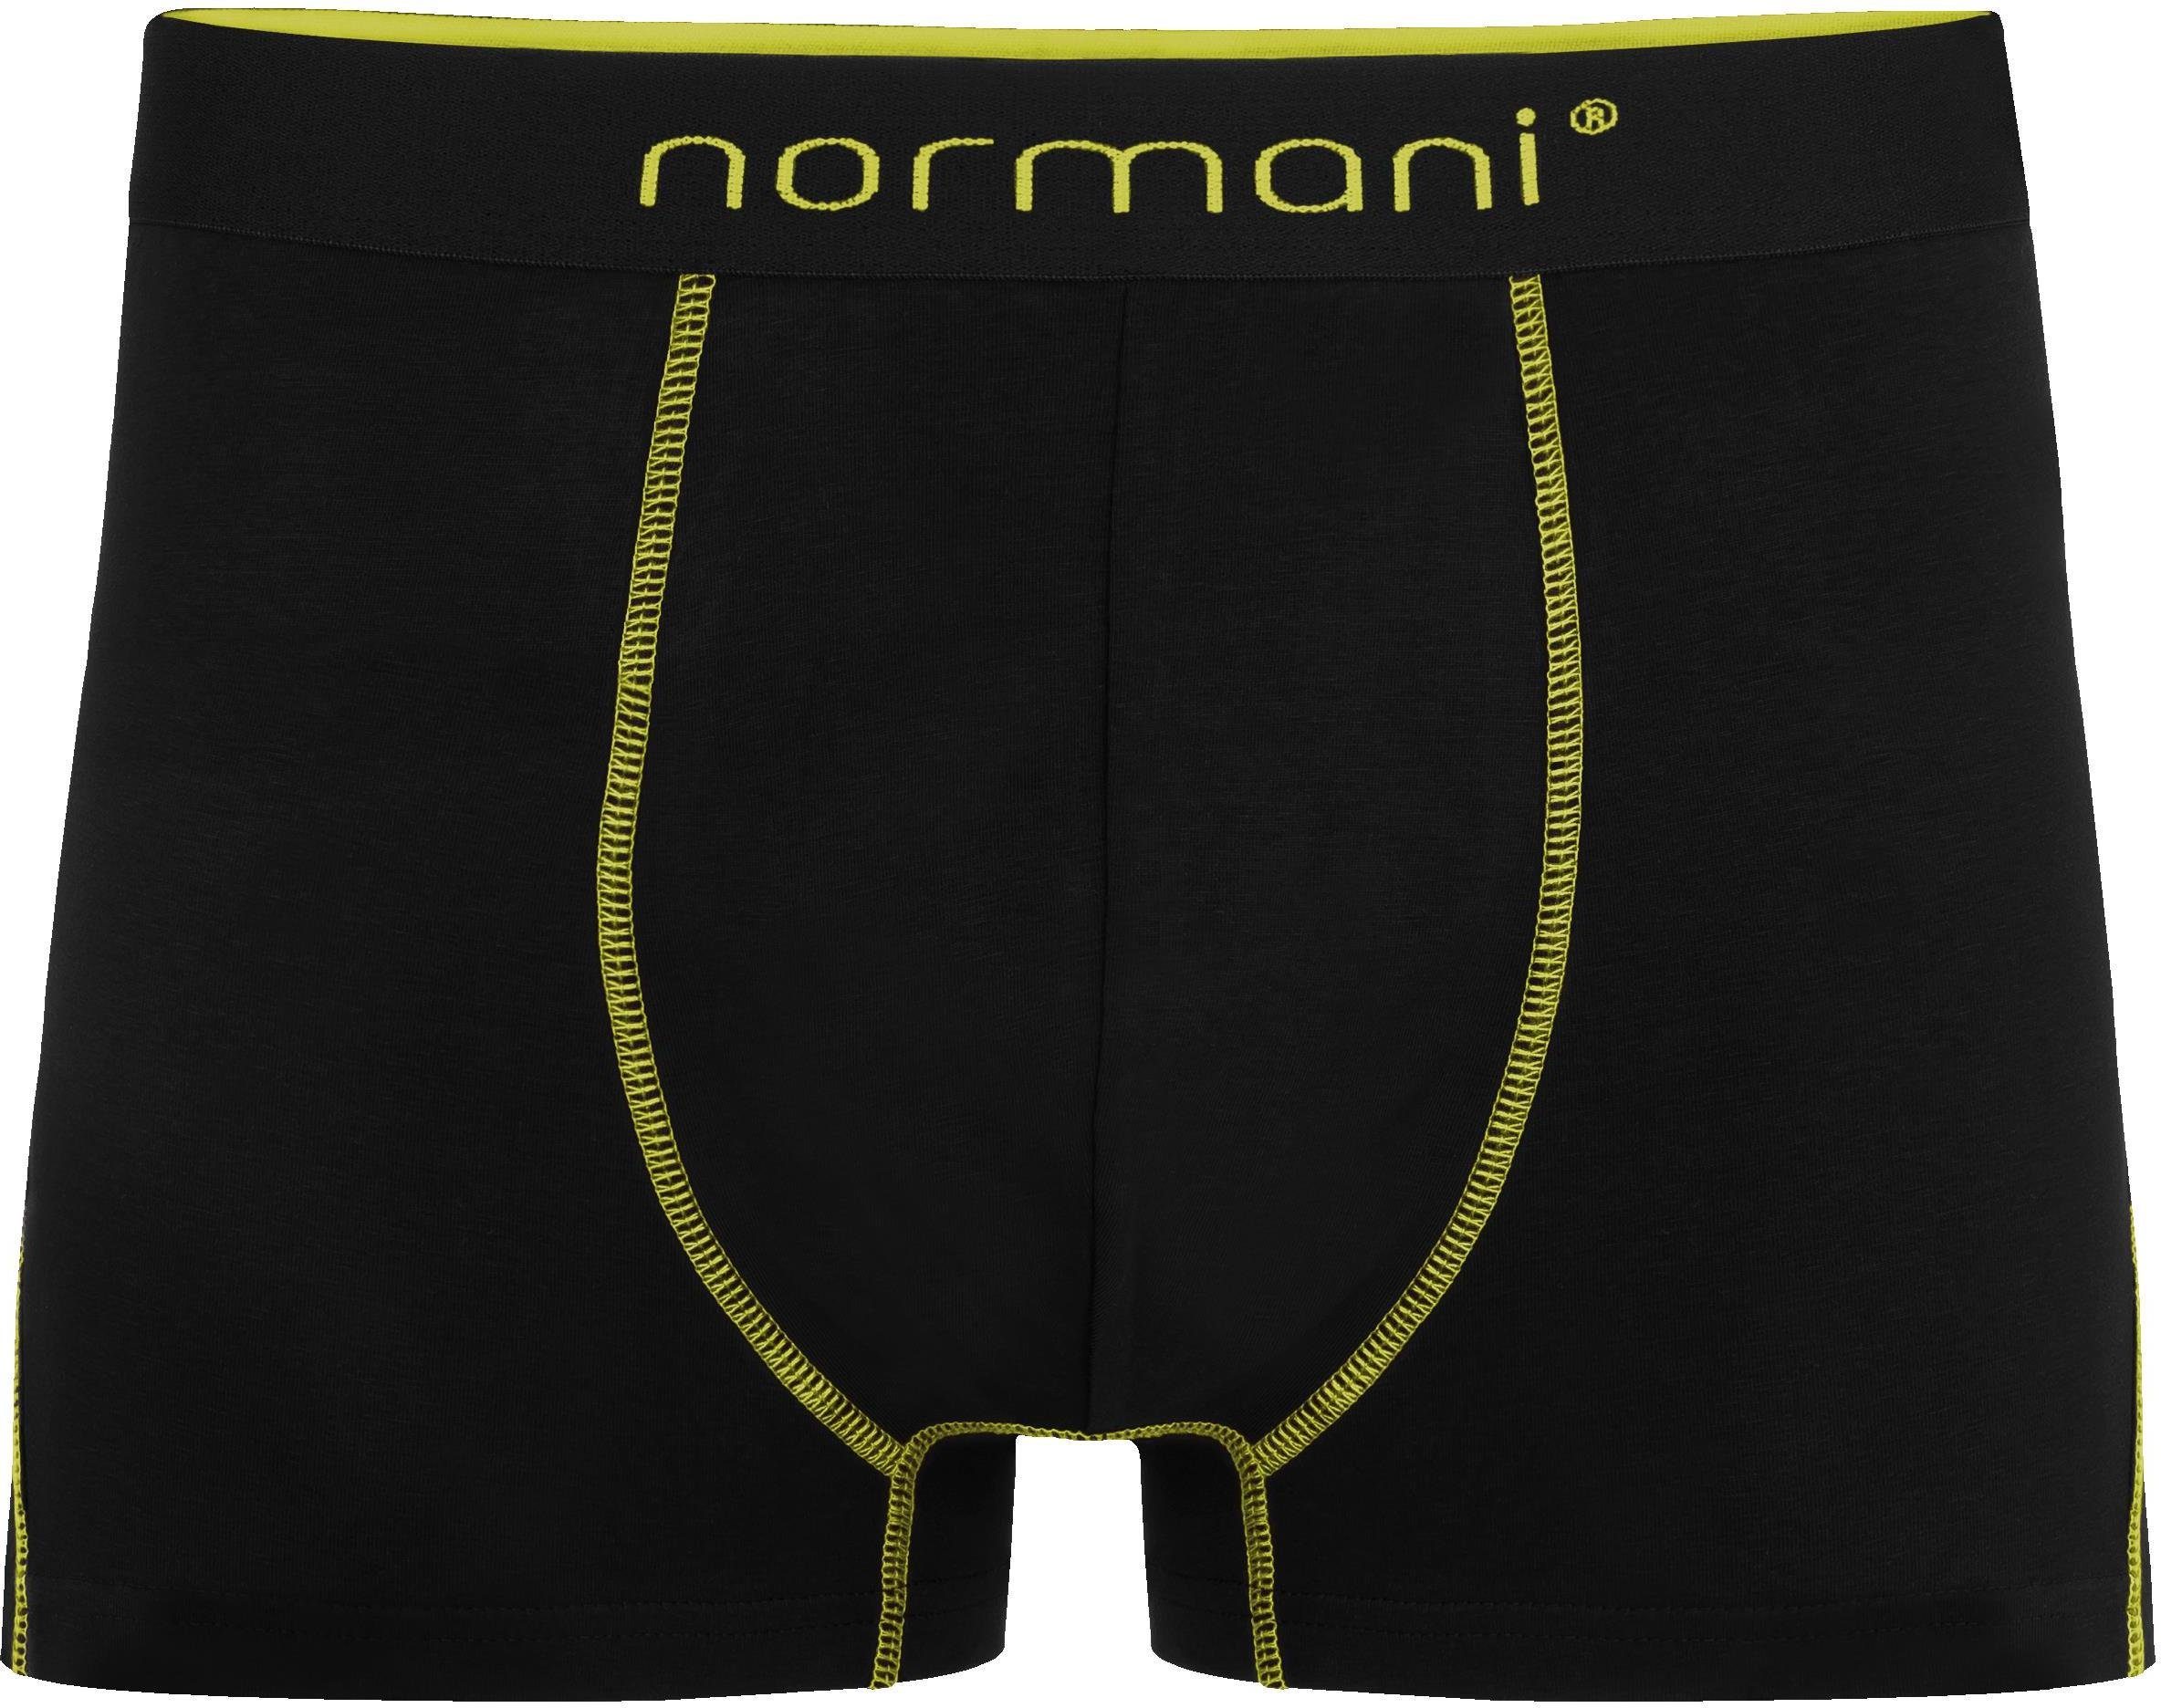 atmungsaktiver Boxershorts 12 Männer aus für normani Gelb/Grün/Rot x Baumwolle Herren Baumwoll-Boxershorts Unterhose